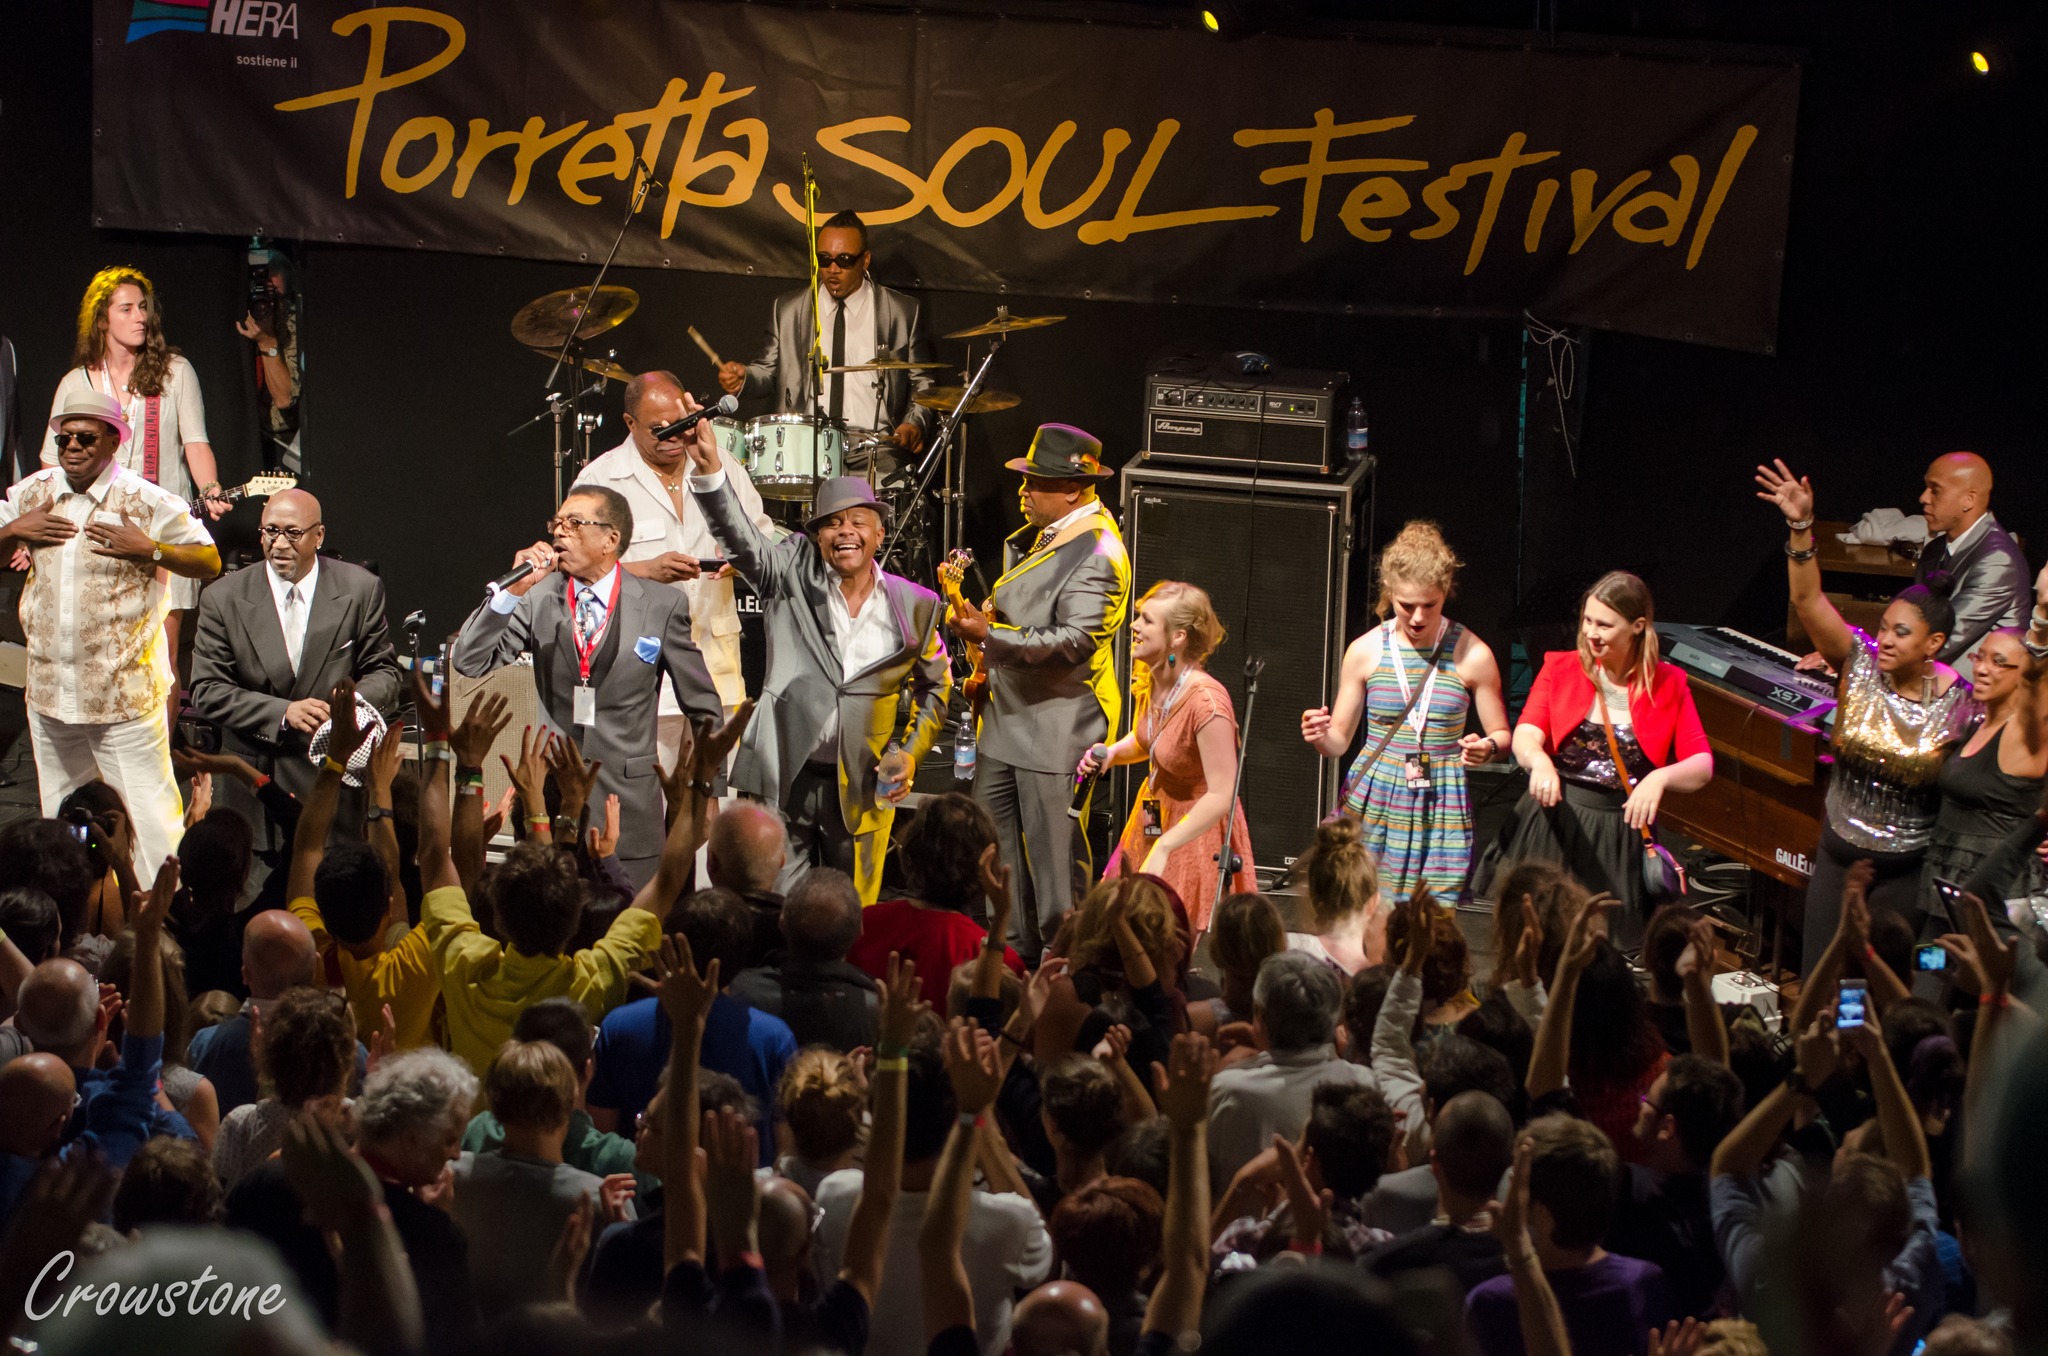 Un concerto del porretta Soul Festival - Foto dal profilo FB del festival